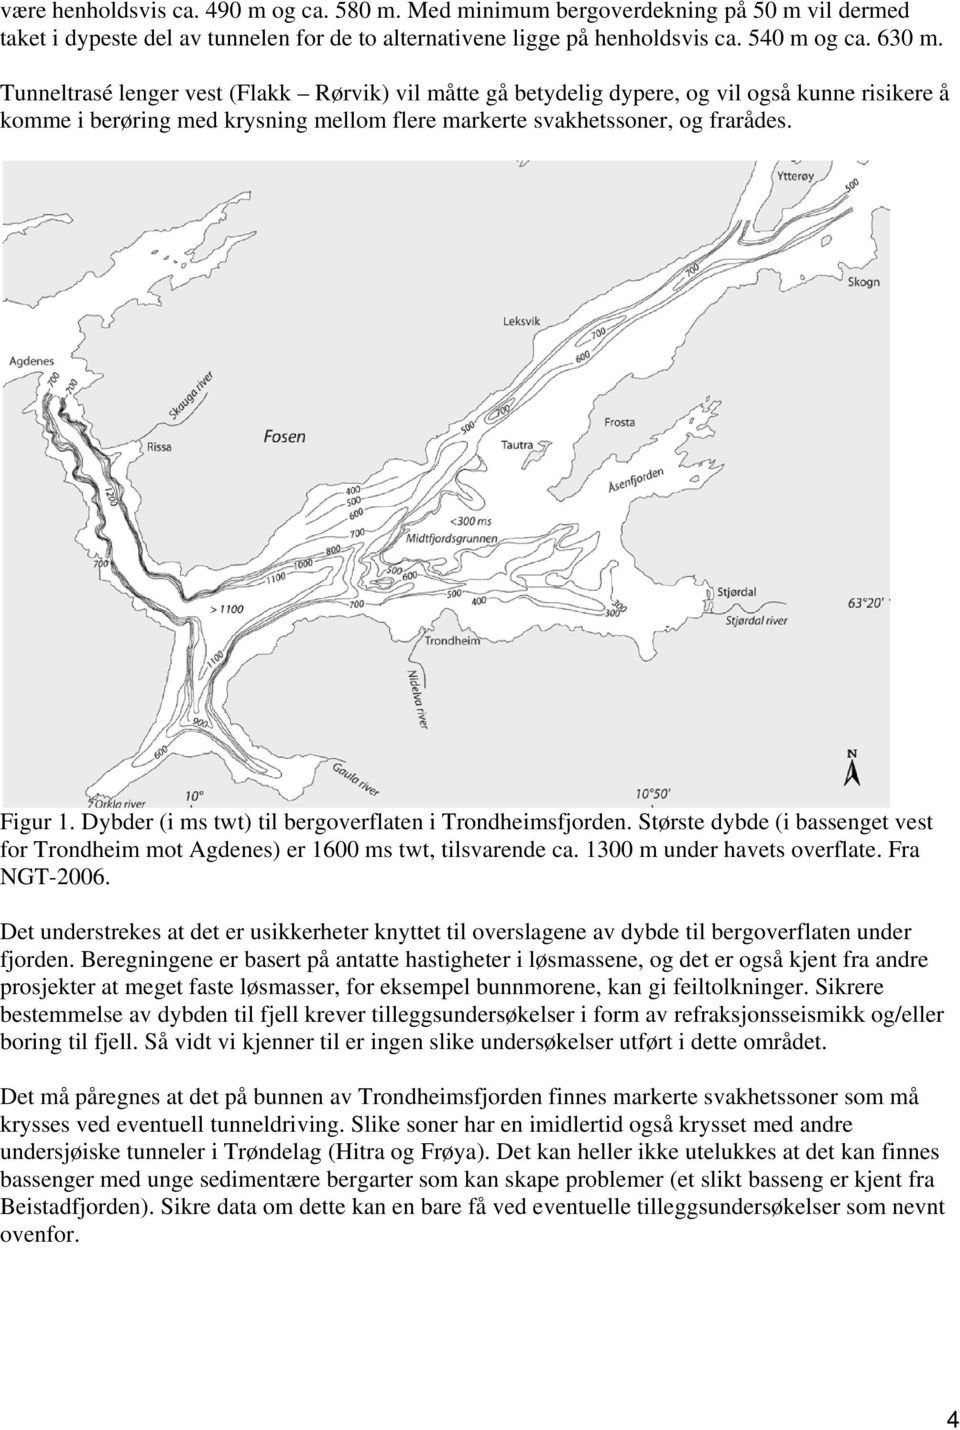 Dybder (i ms twt) til bergoverflaten i Trondheimsfjorden. Største dybde (i bassenget vest for Trondheim mot Agdenes) er 1600 ms twt, tilsvarende ca. 1300 m under havets overflate. Fra NGT-2006.